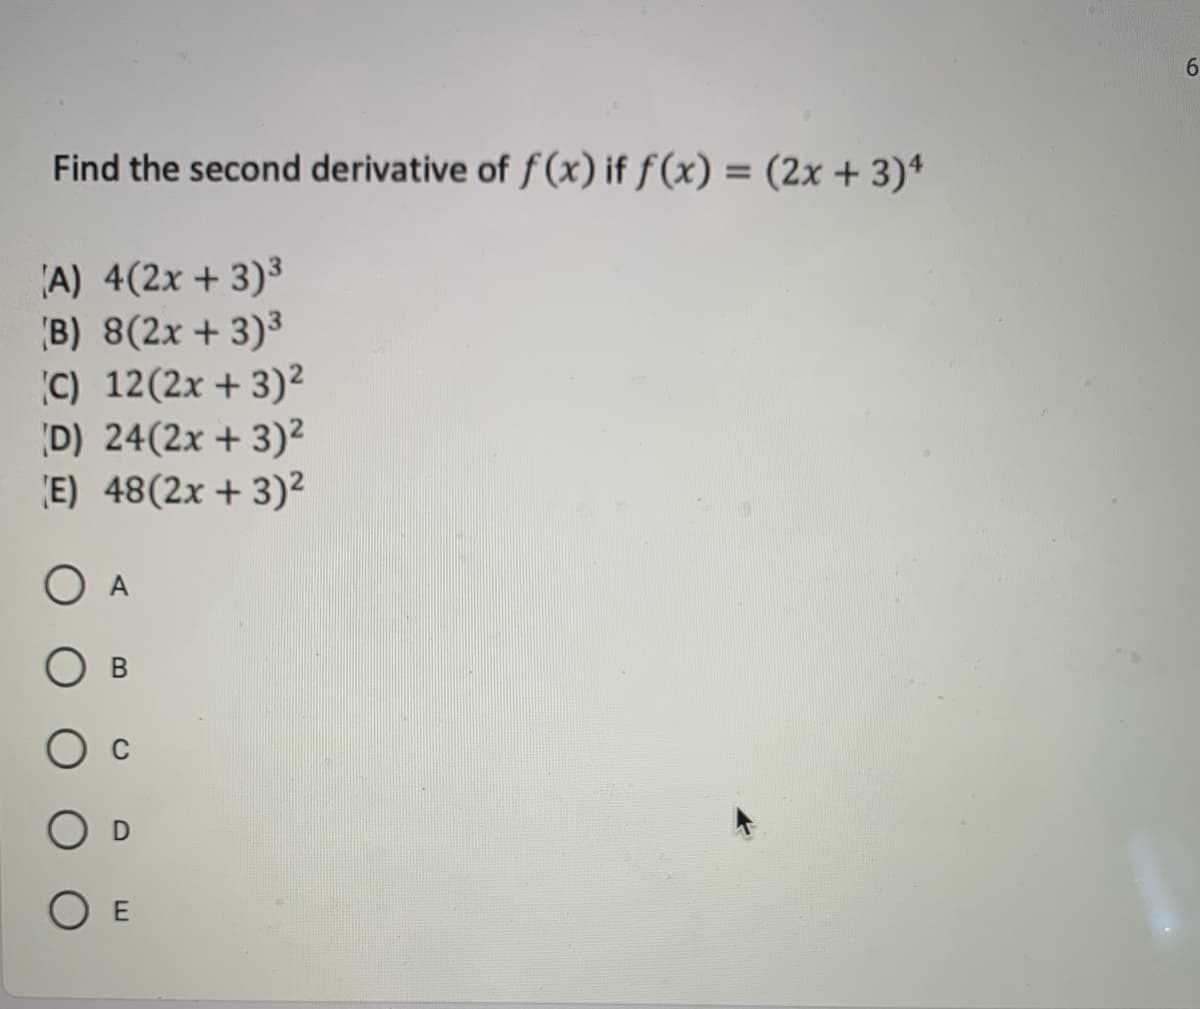 6.
Find the second derivative of f (x) if ƒ (x) = (2x + 3)ª
%3D
A) 4(2x + 3)³
B) 8(2x + 3)3
C) 12(2x + 3)²
D) 24(2x + 3)²
E) 48(2x + 3)²
O A
O E
